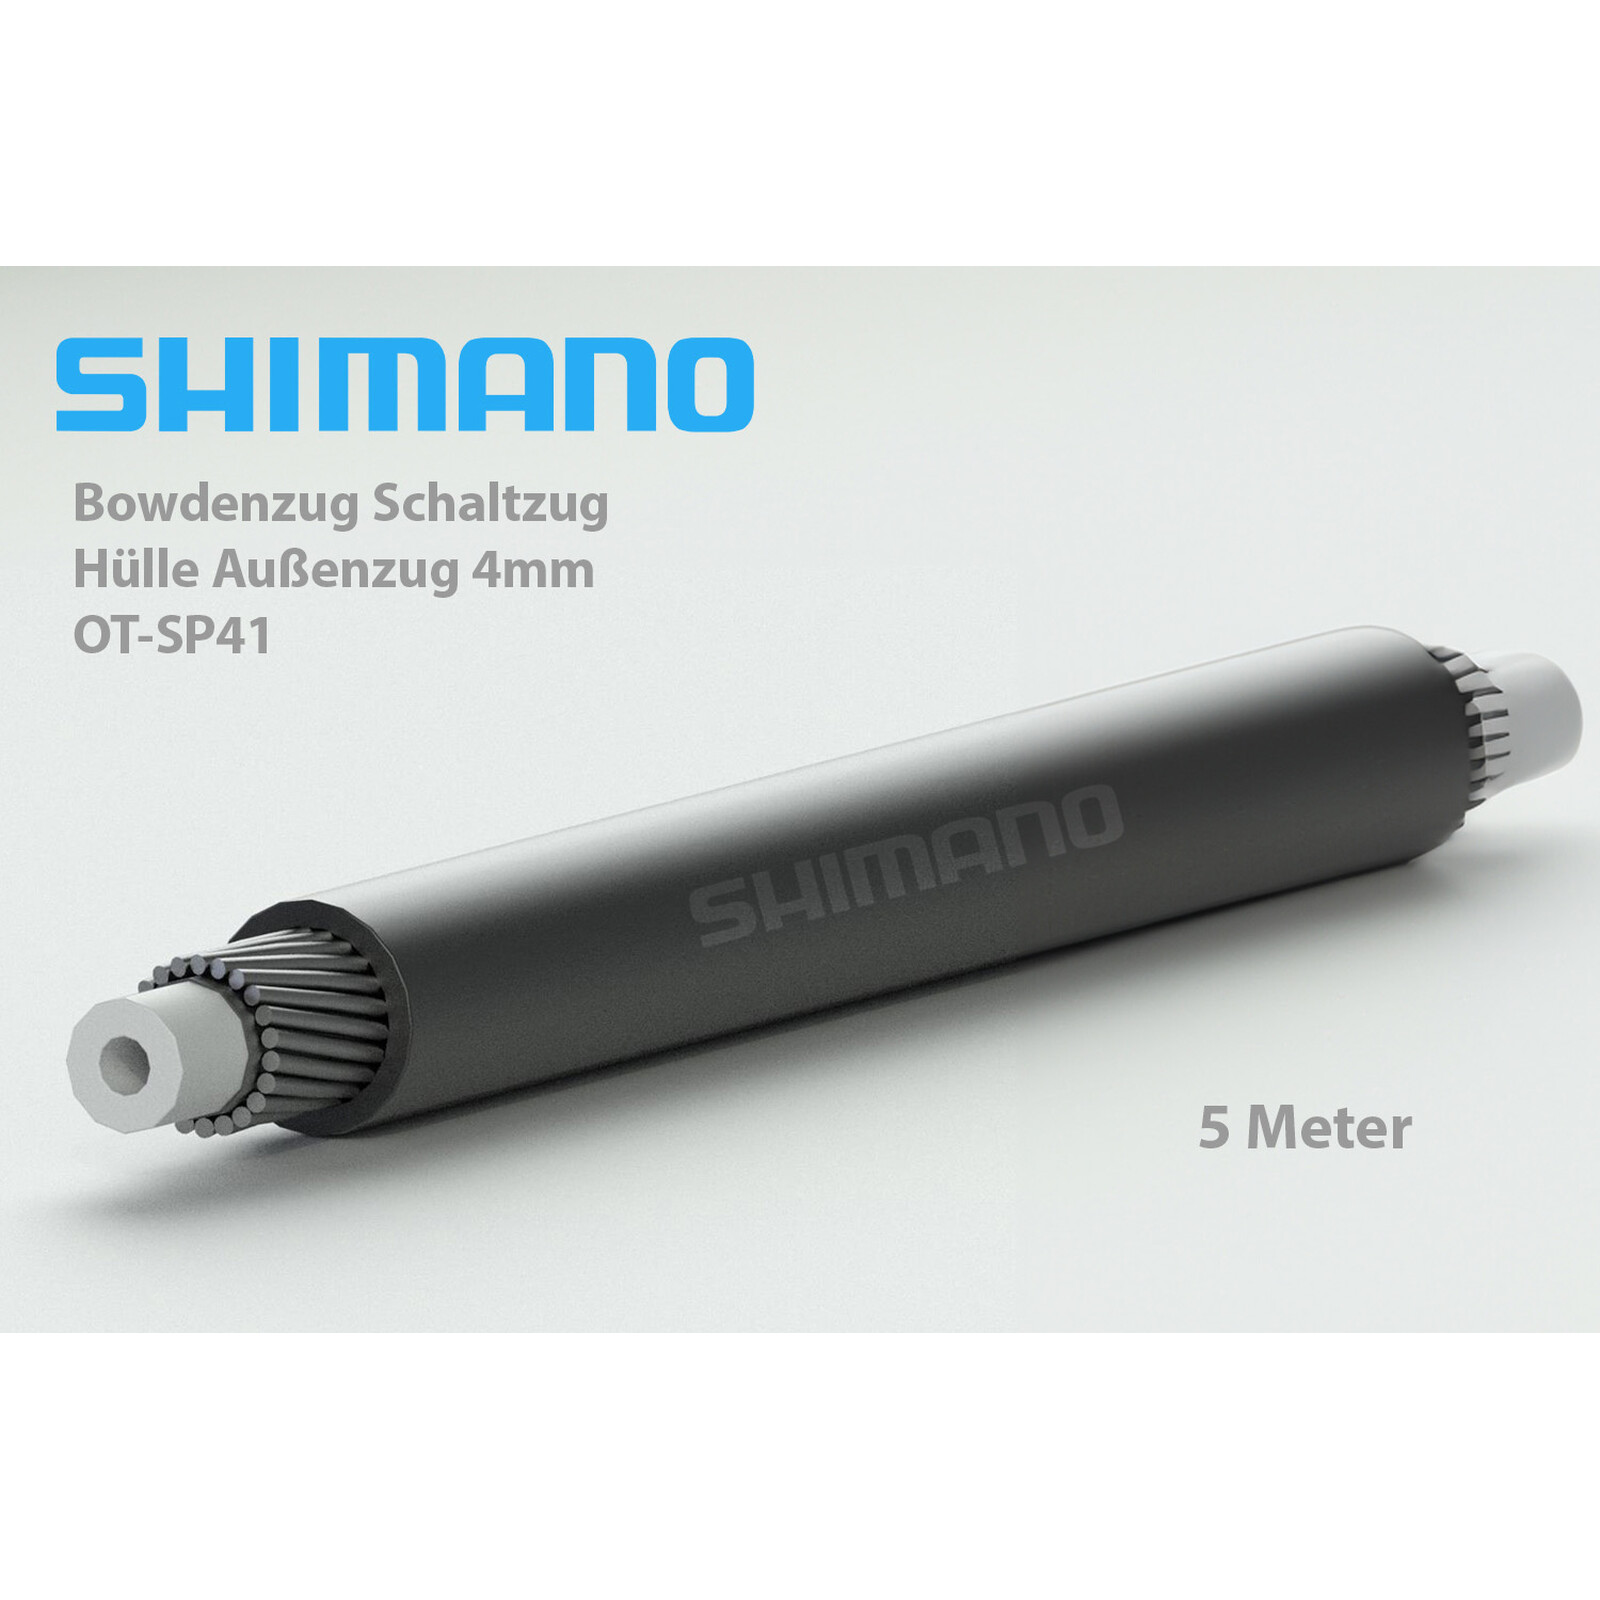 5 Meter SHIMANO Schaltzug Außen Hülle für Bowdenzug Schaltung 4mm Tef, 8,99  €